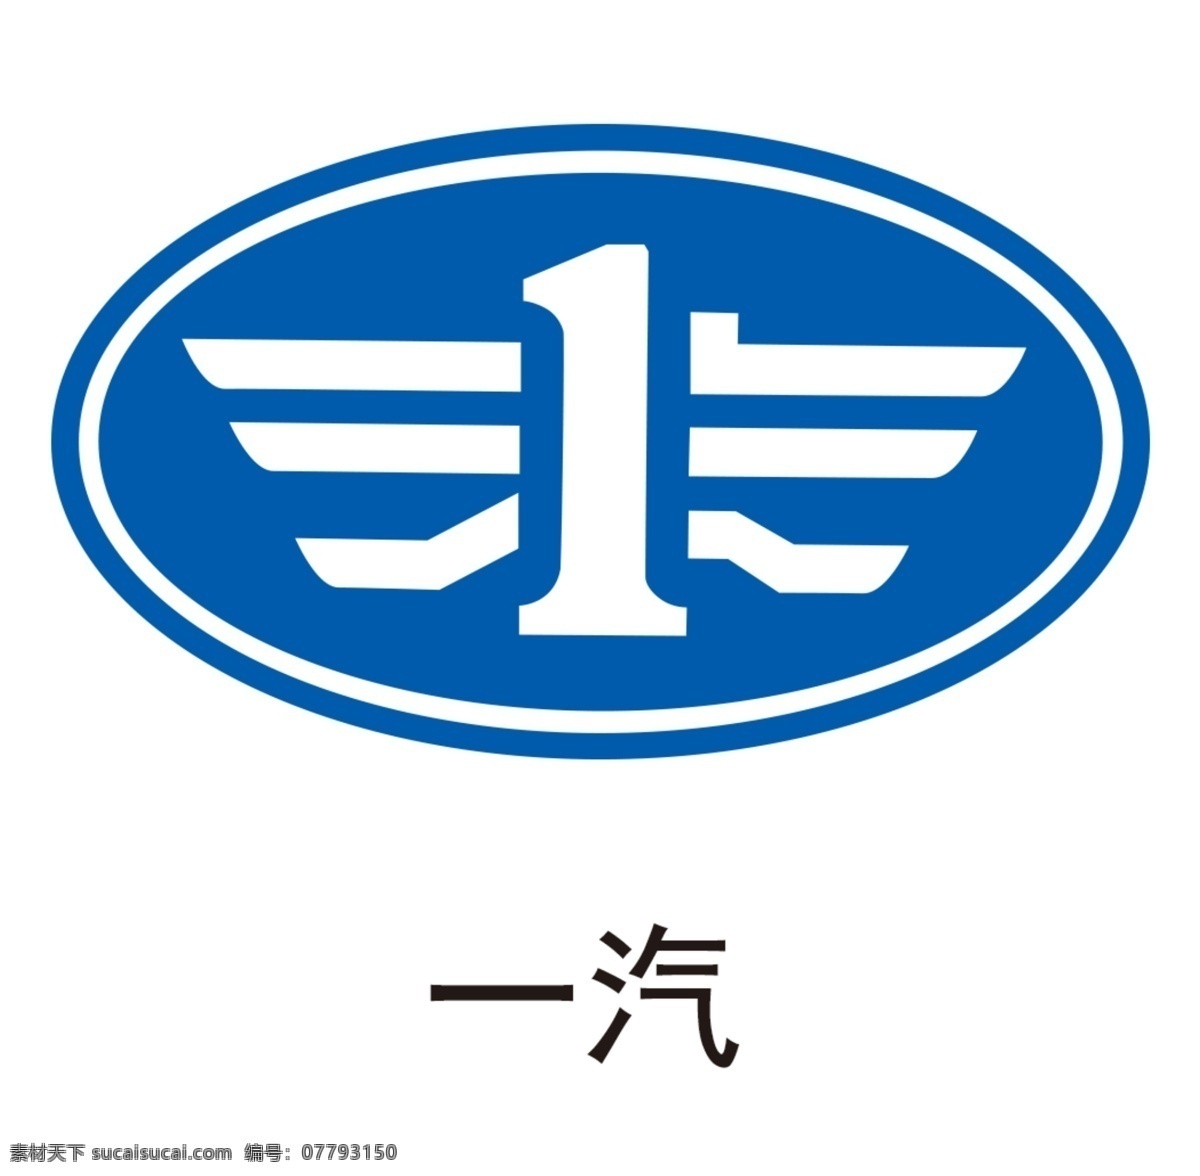 一汽图片 一汽 中国一汽 一汽解放 一汽标志 一汽logo 一汽车标